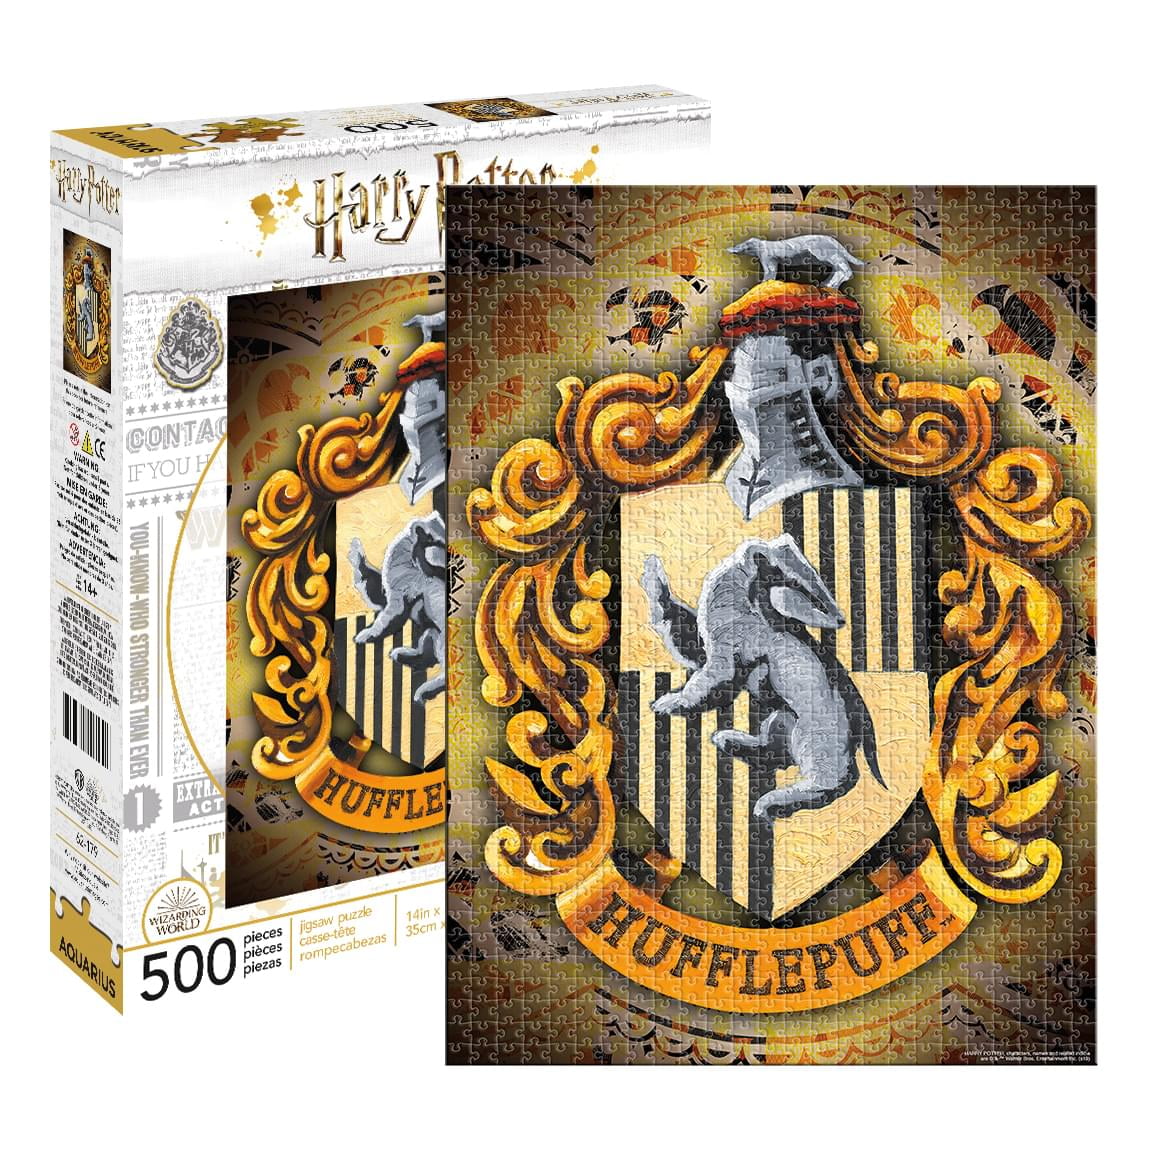 Harry Potter Dumbledorf 1000 pc Slim Puzzle - Walmart.com